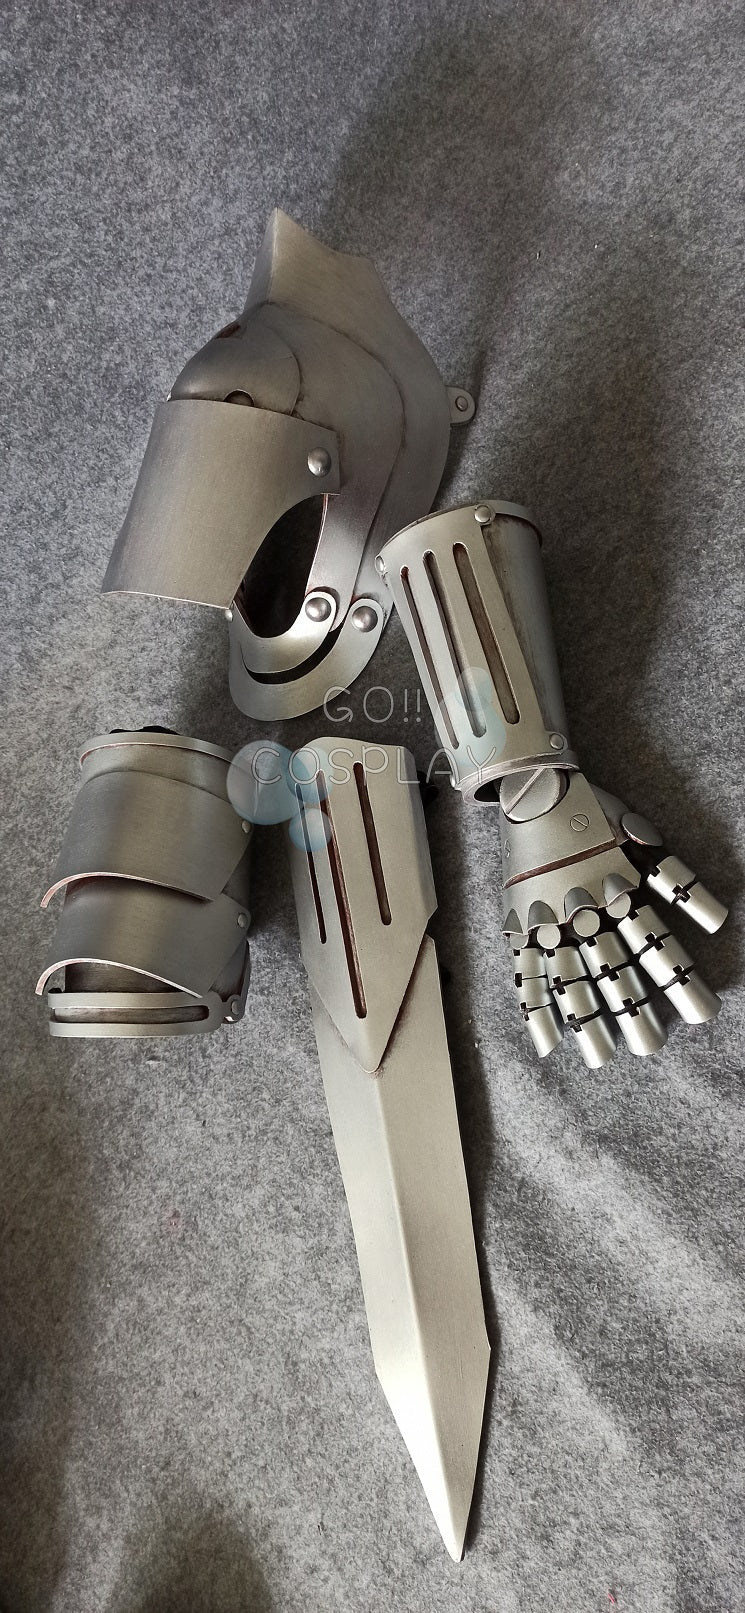 Fullmetal Alchemist Edward Elric Cosplay Arm for Sale